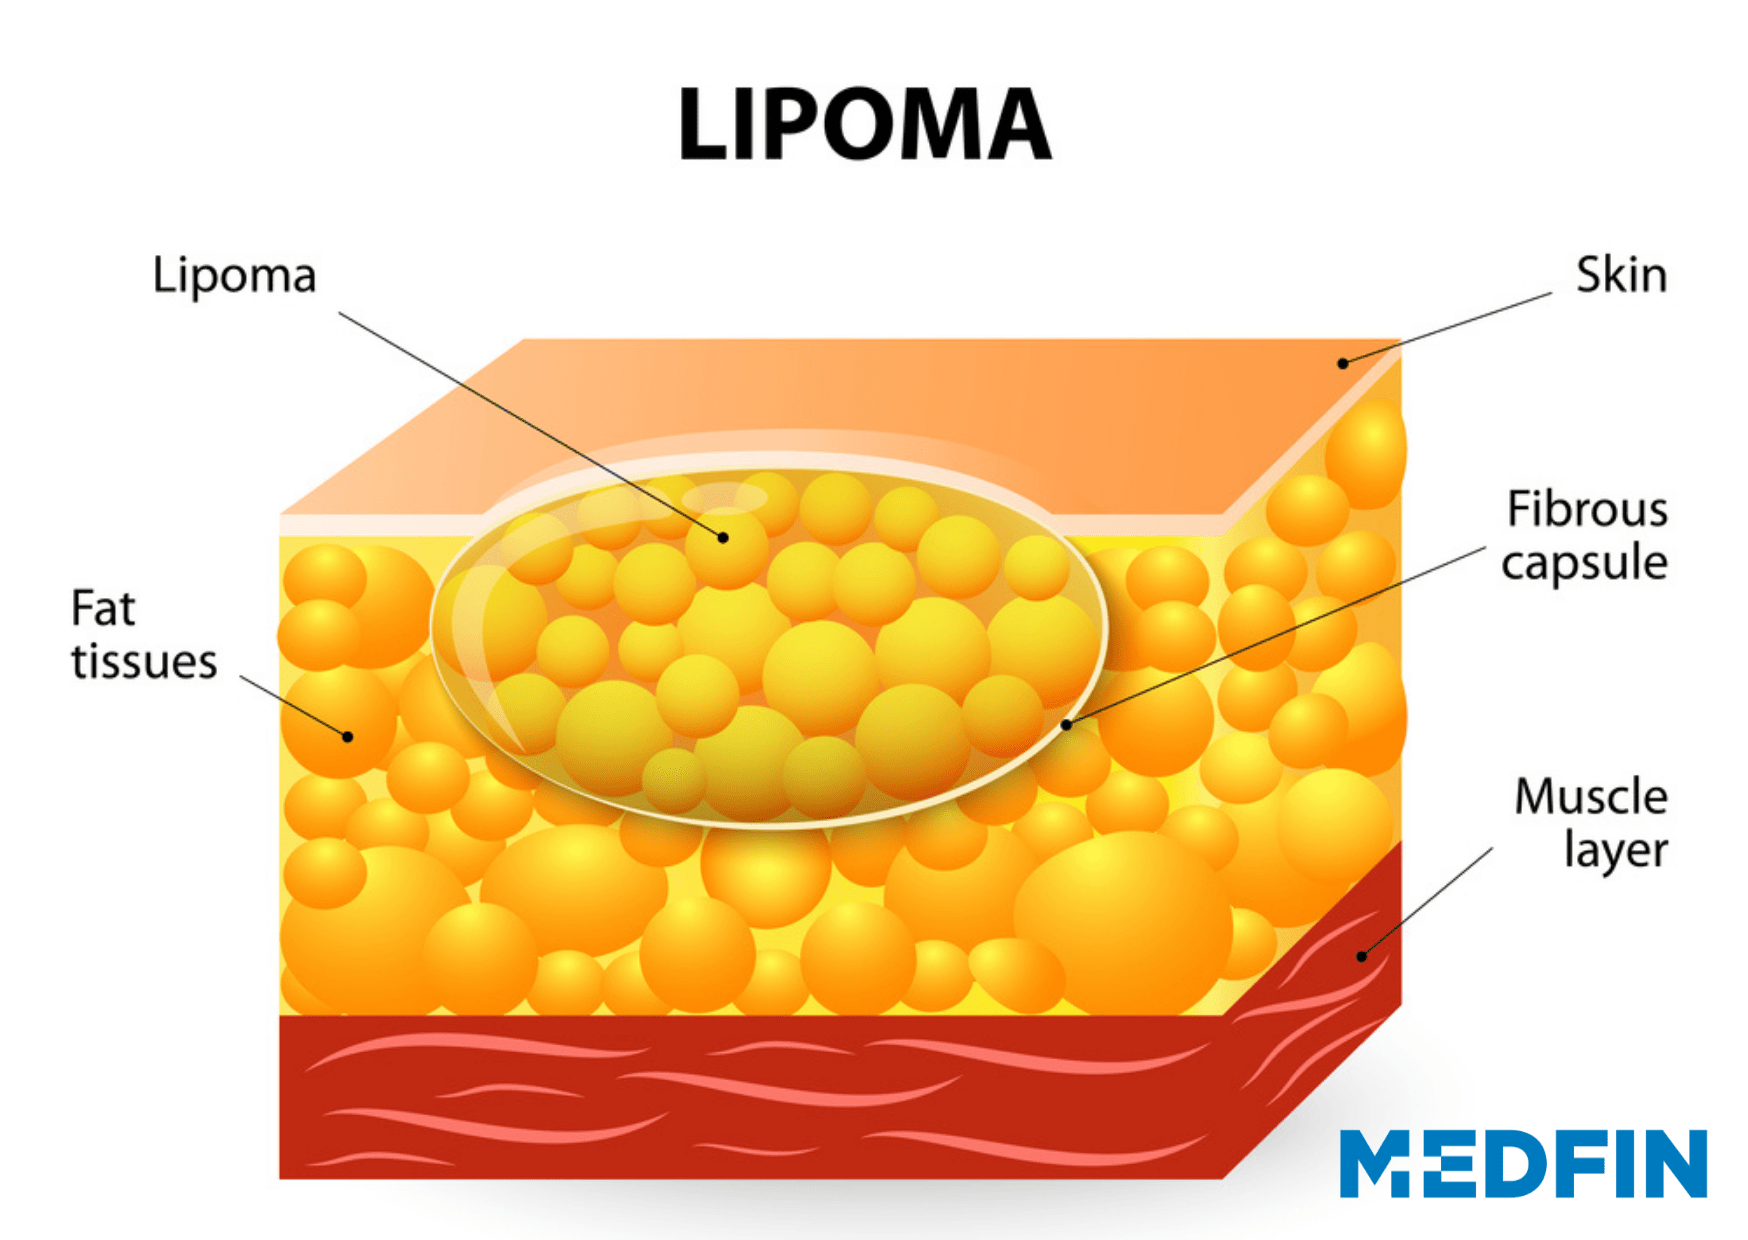 Why do Lipomas occur?